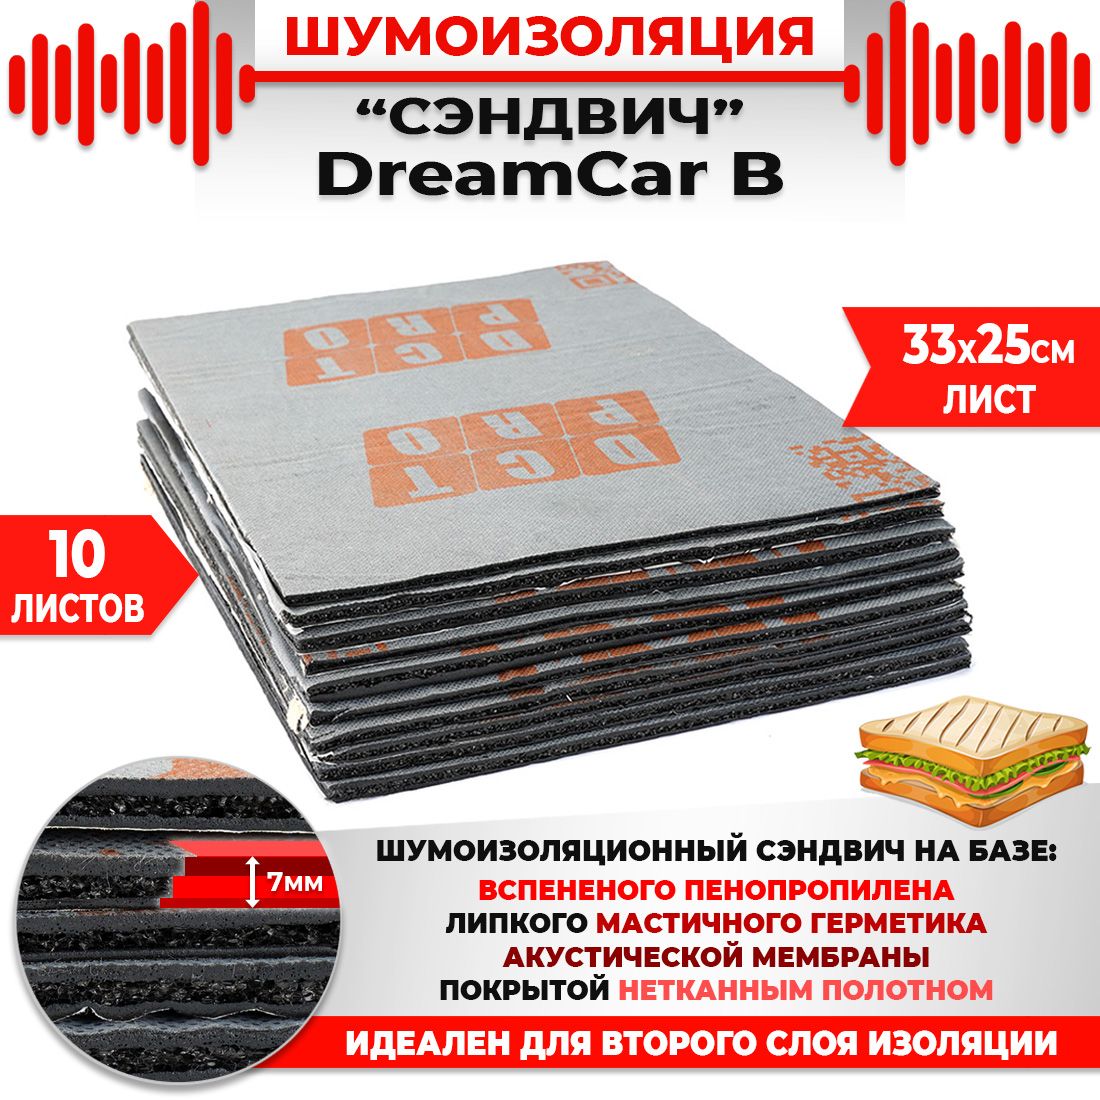 10шт. Шумомоизоляция СЭНДВИЧ Быстрого монтажа DreamCar B 33х25см 7мм 10 листов